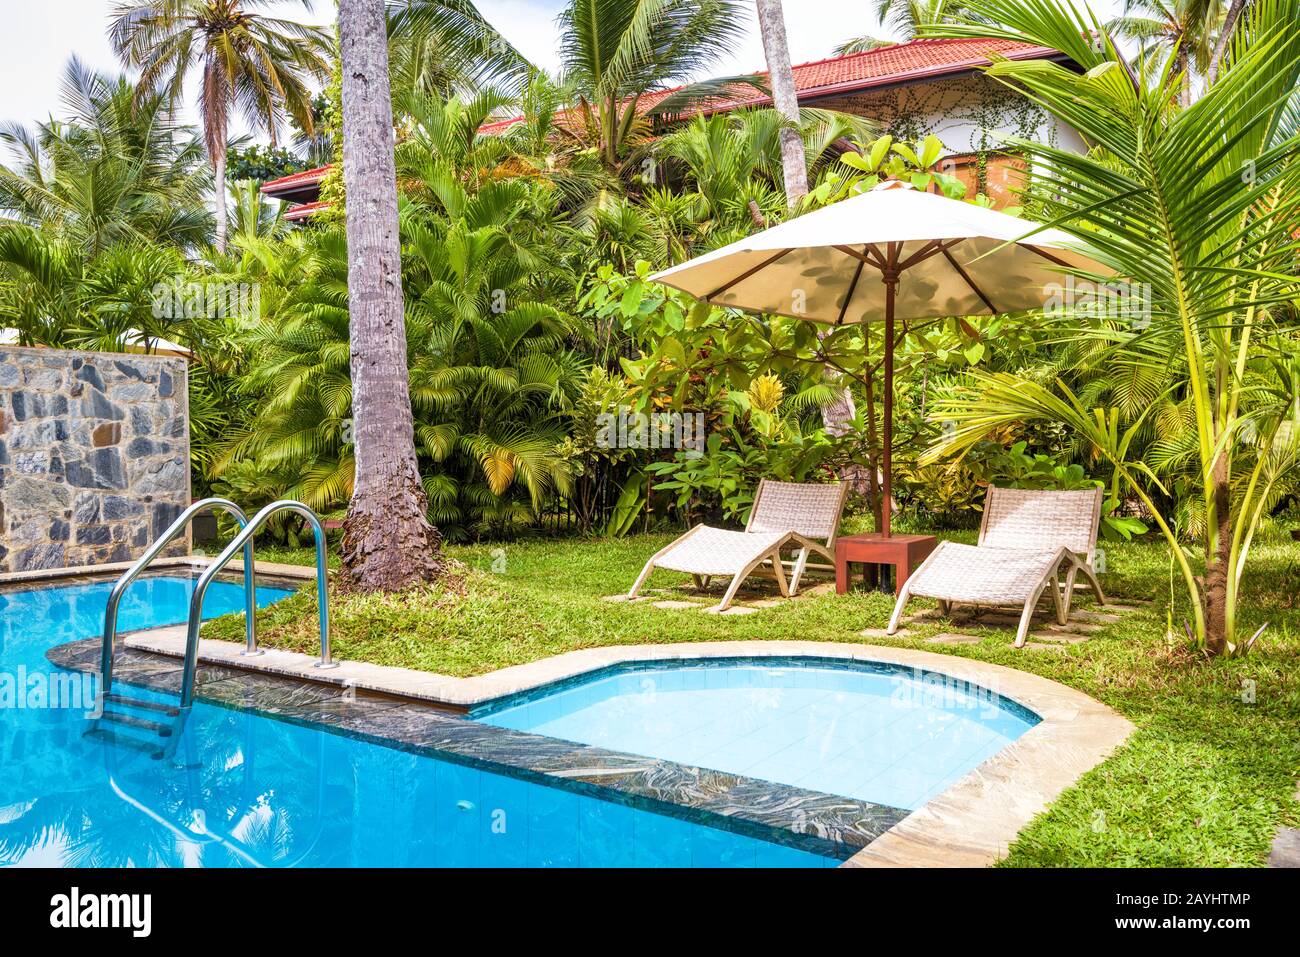 Sri Lanka - 31 octobre 2017: Piscine avec parasol et lits de plage dans un hôtel ou une maison tropicale. Belle piscine dans l'arrière-cour. Piscine avec bleu clea Banque D'Images